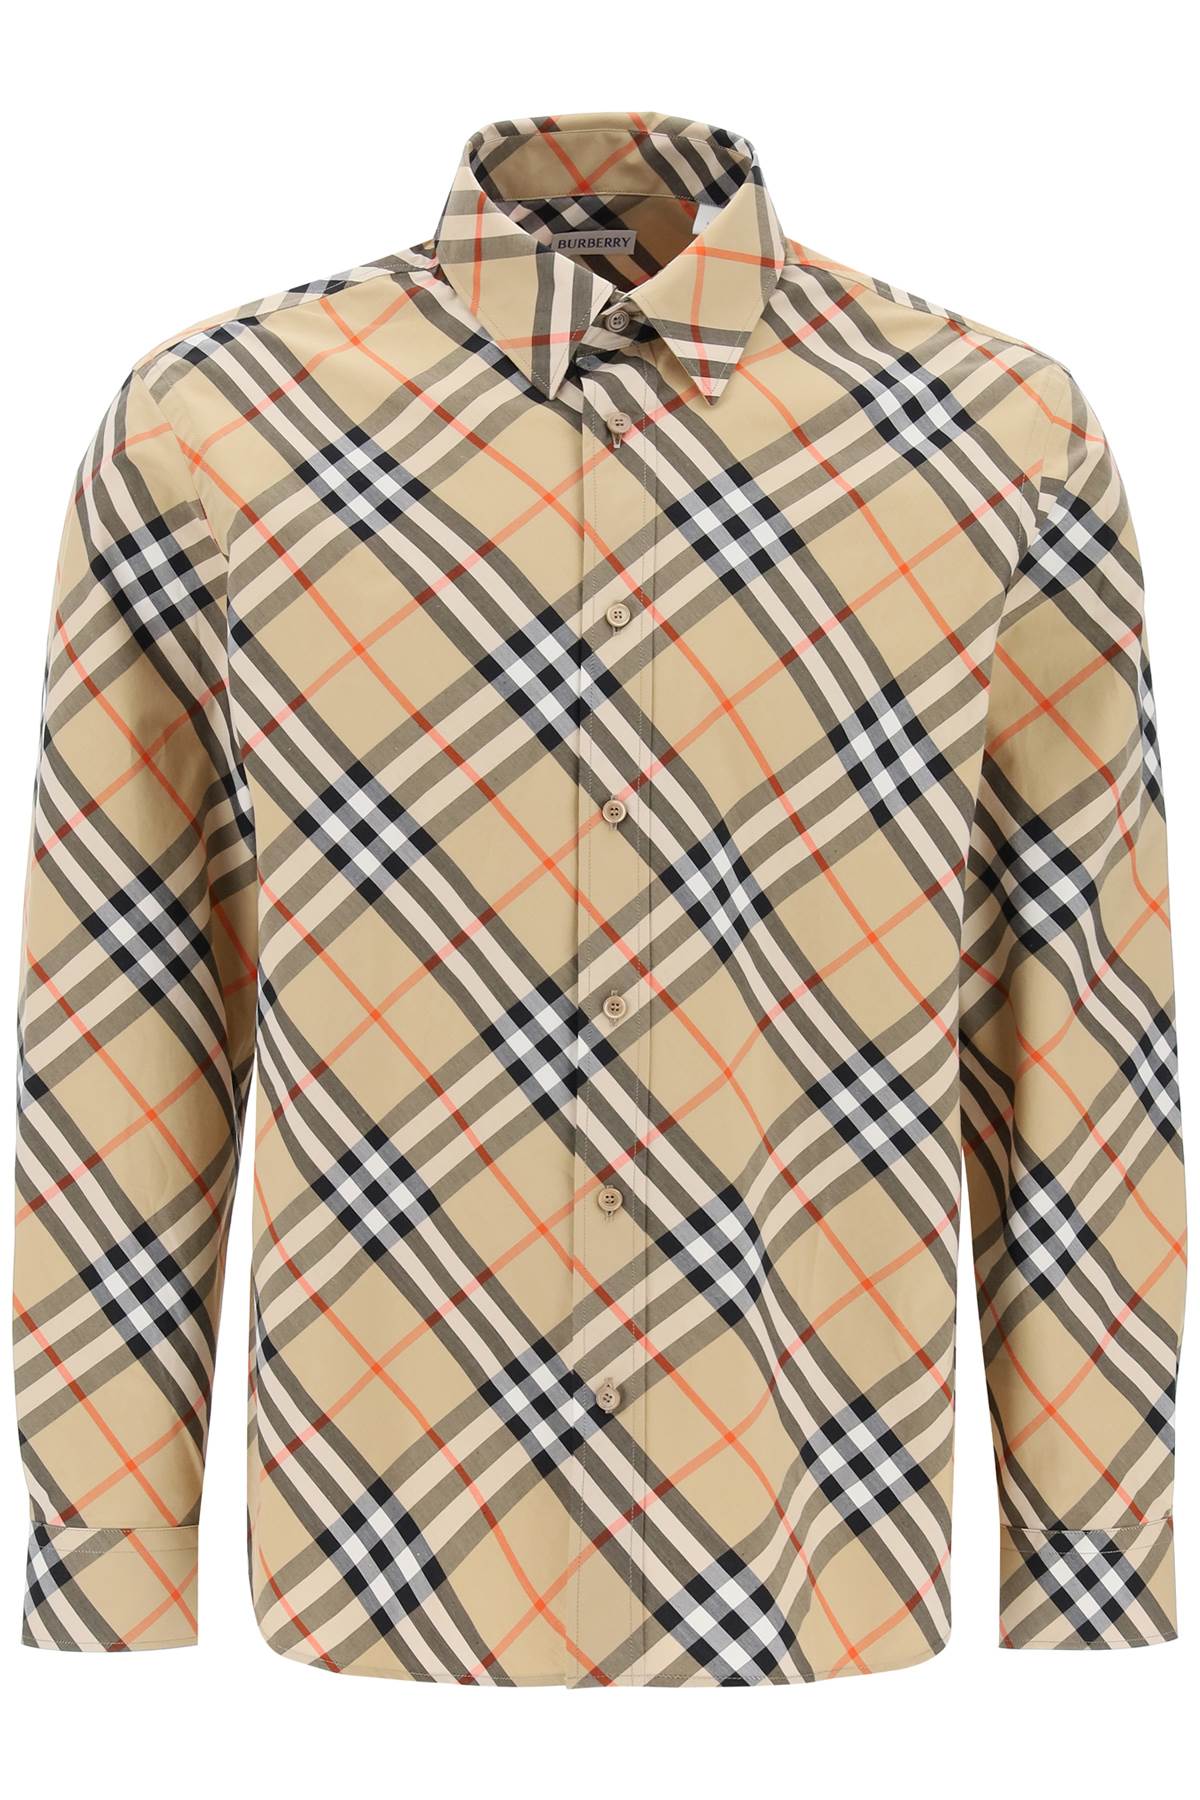 Burberry Men's Long-Sleeved Cotton Shirt - Tan (Supplier SKU: 8087634)